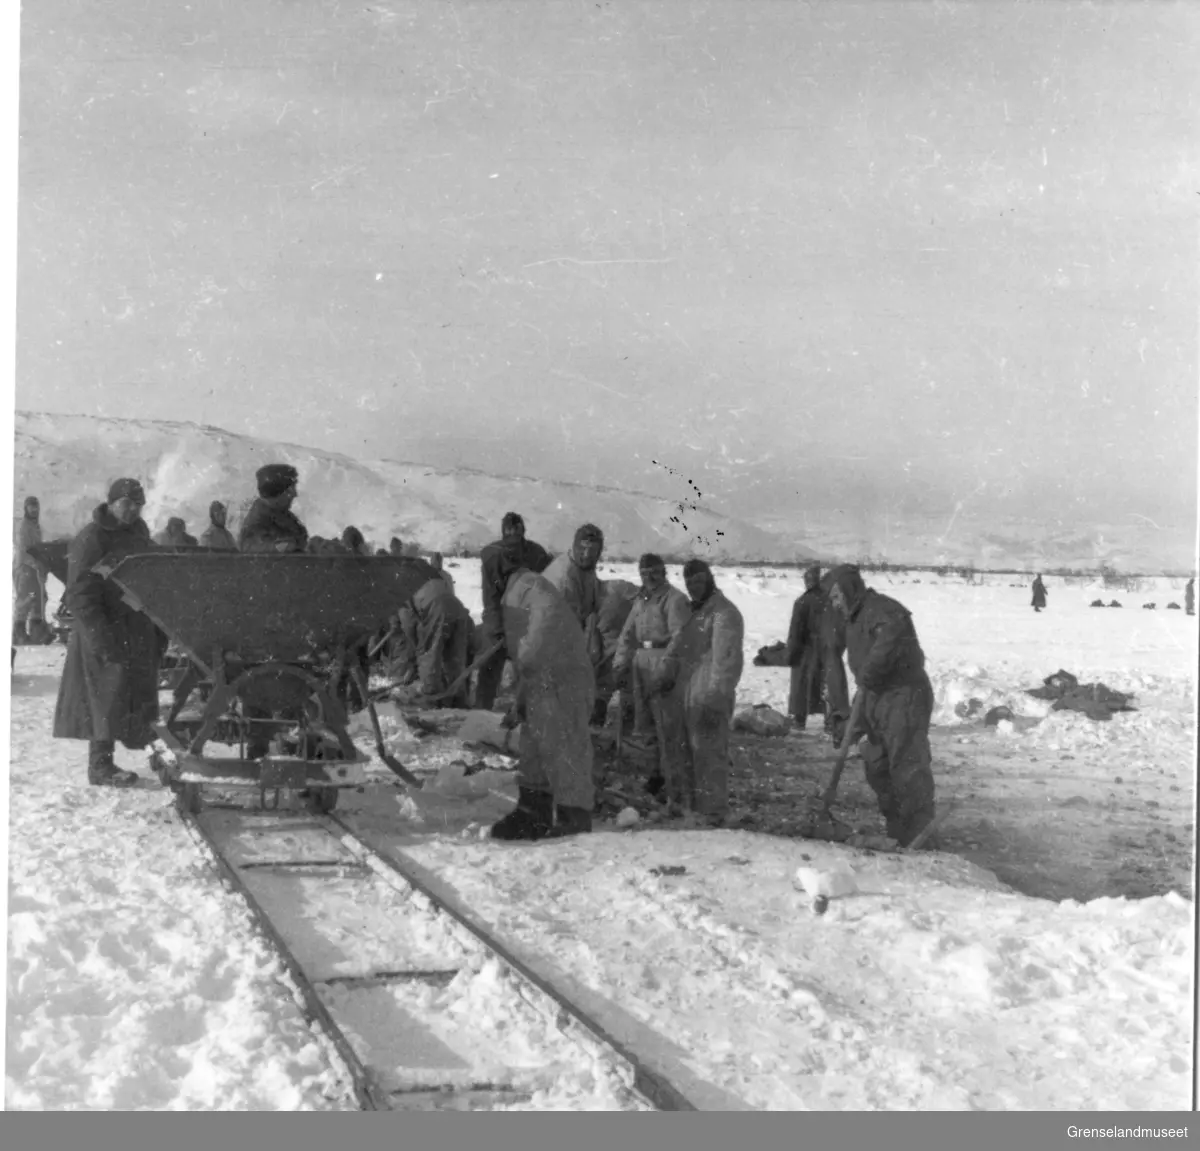 Sør-Varanger under krigen.
Tyske soldater på flyplassen